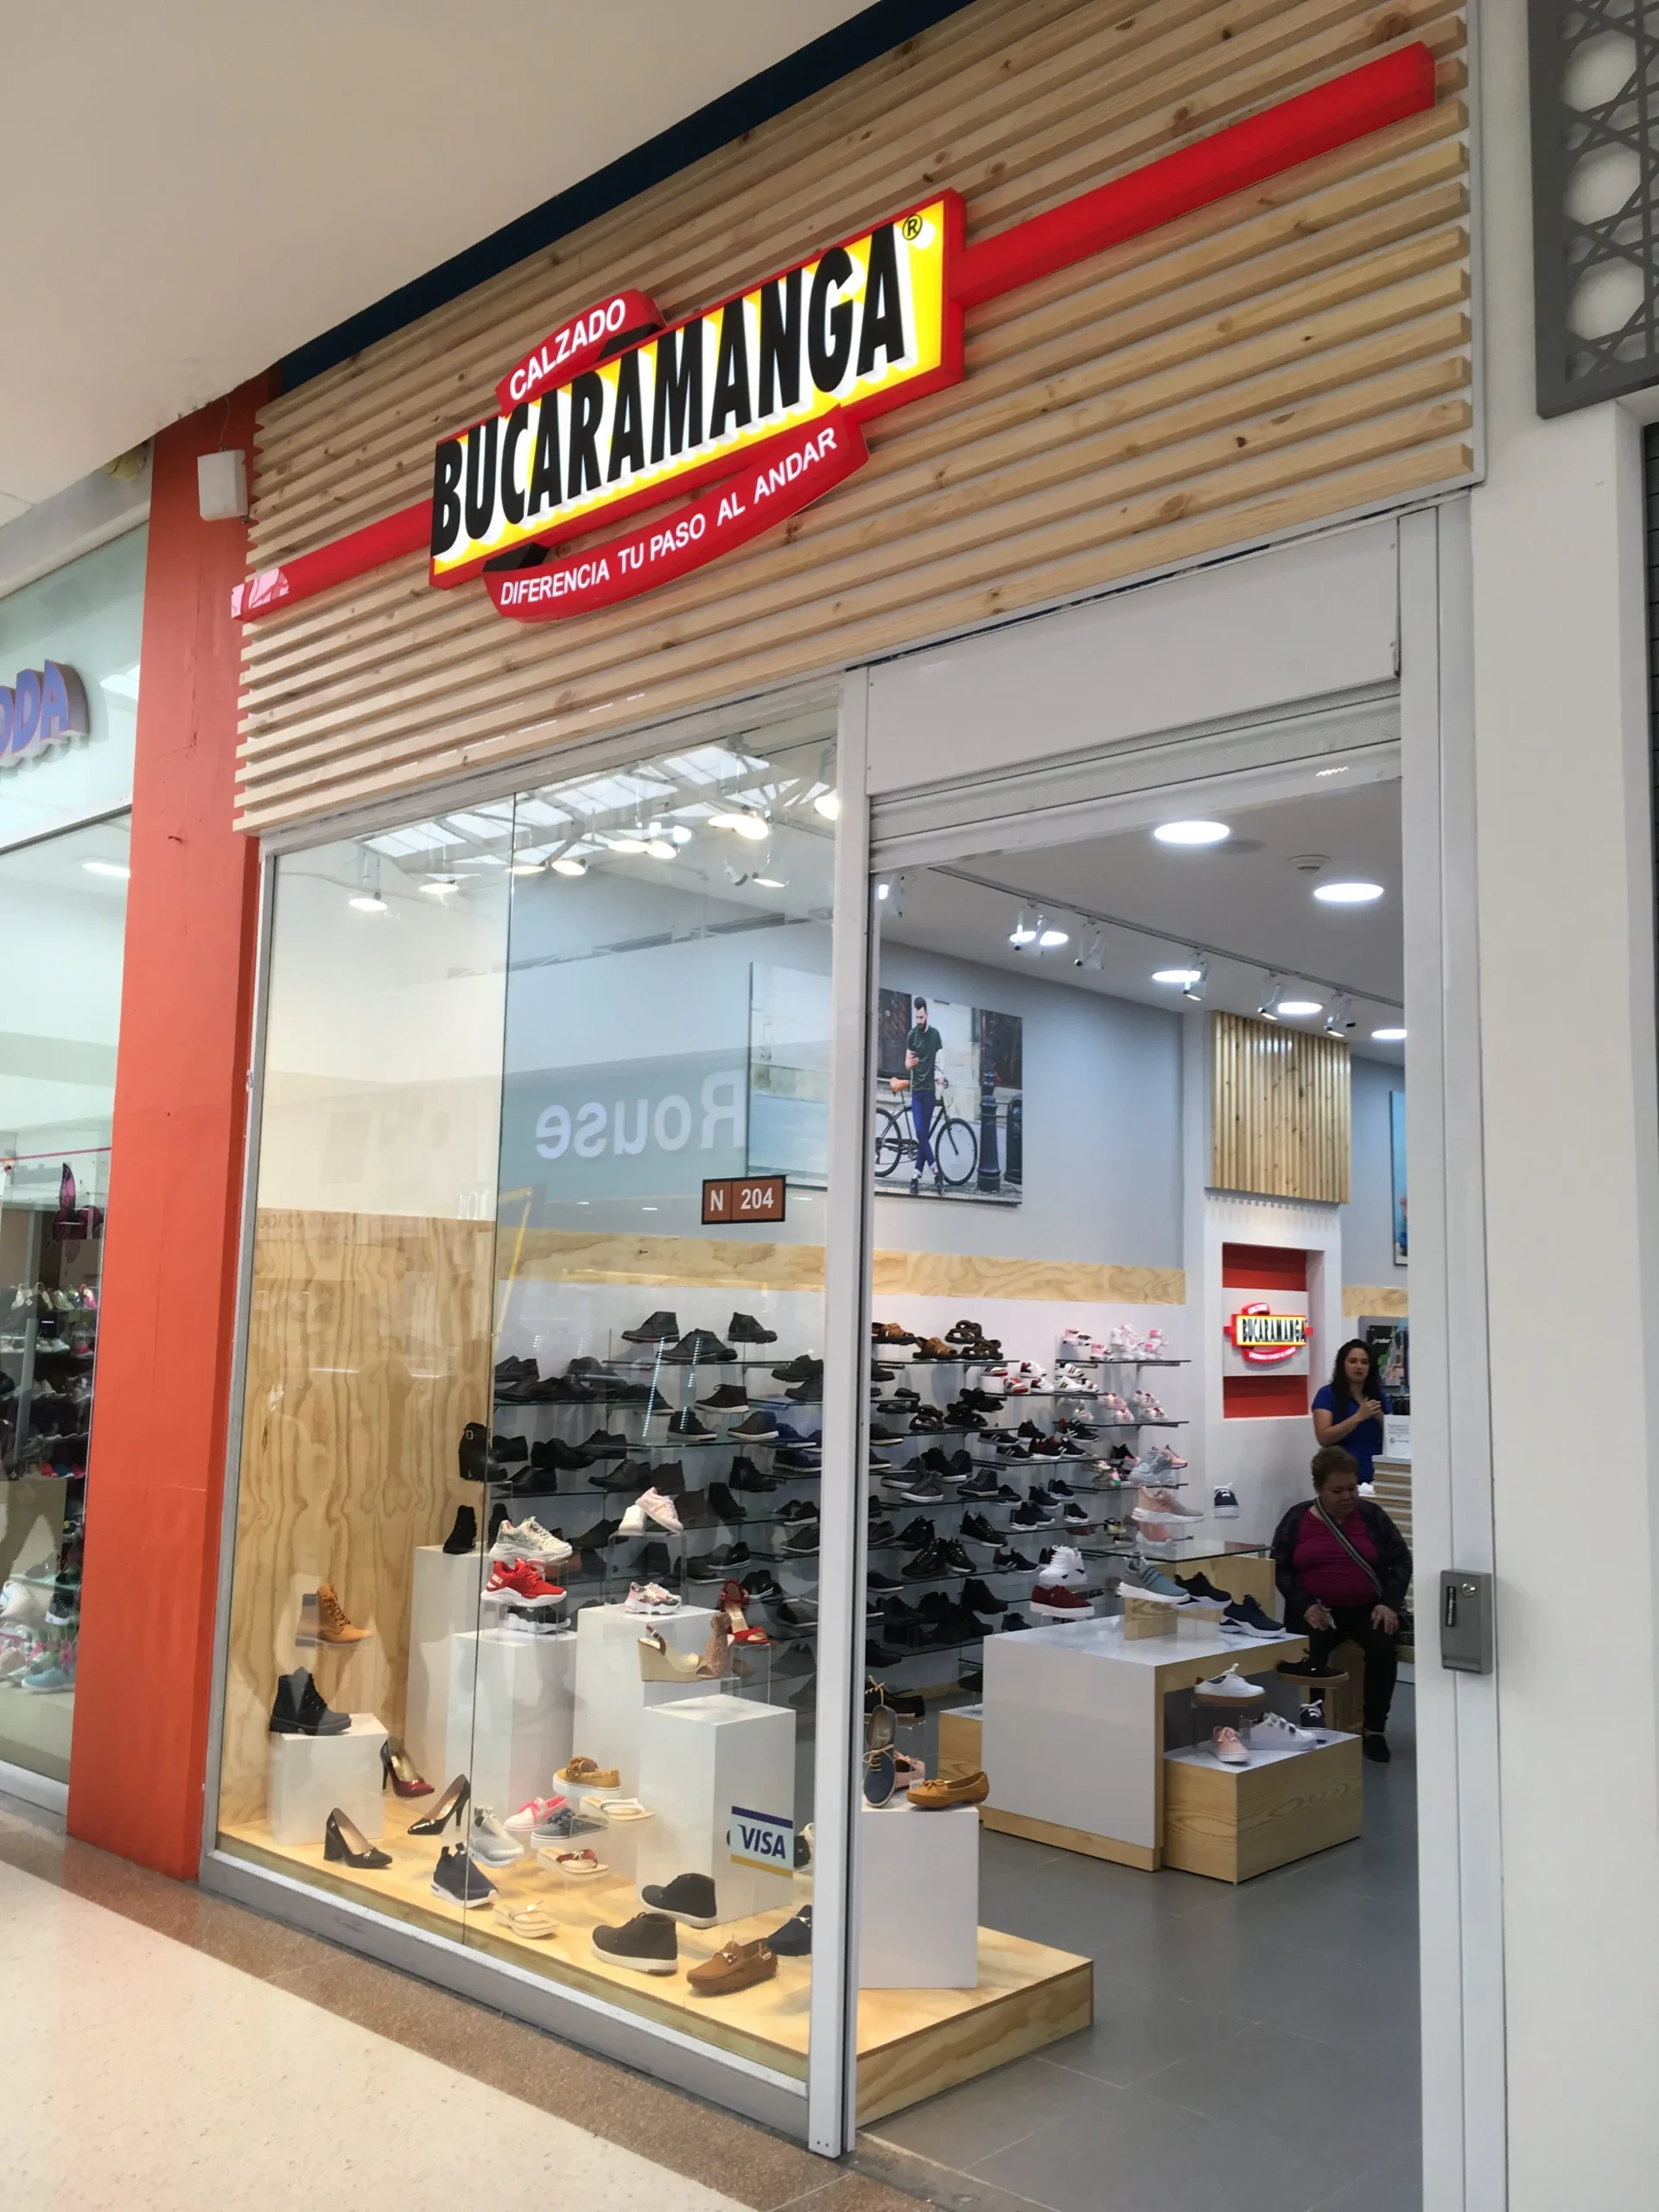 flete precio zapatos bogota bucaramanga - Cuánto pagan en Calzado Bucaramanga